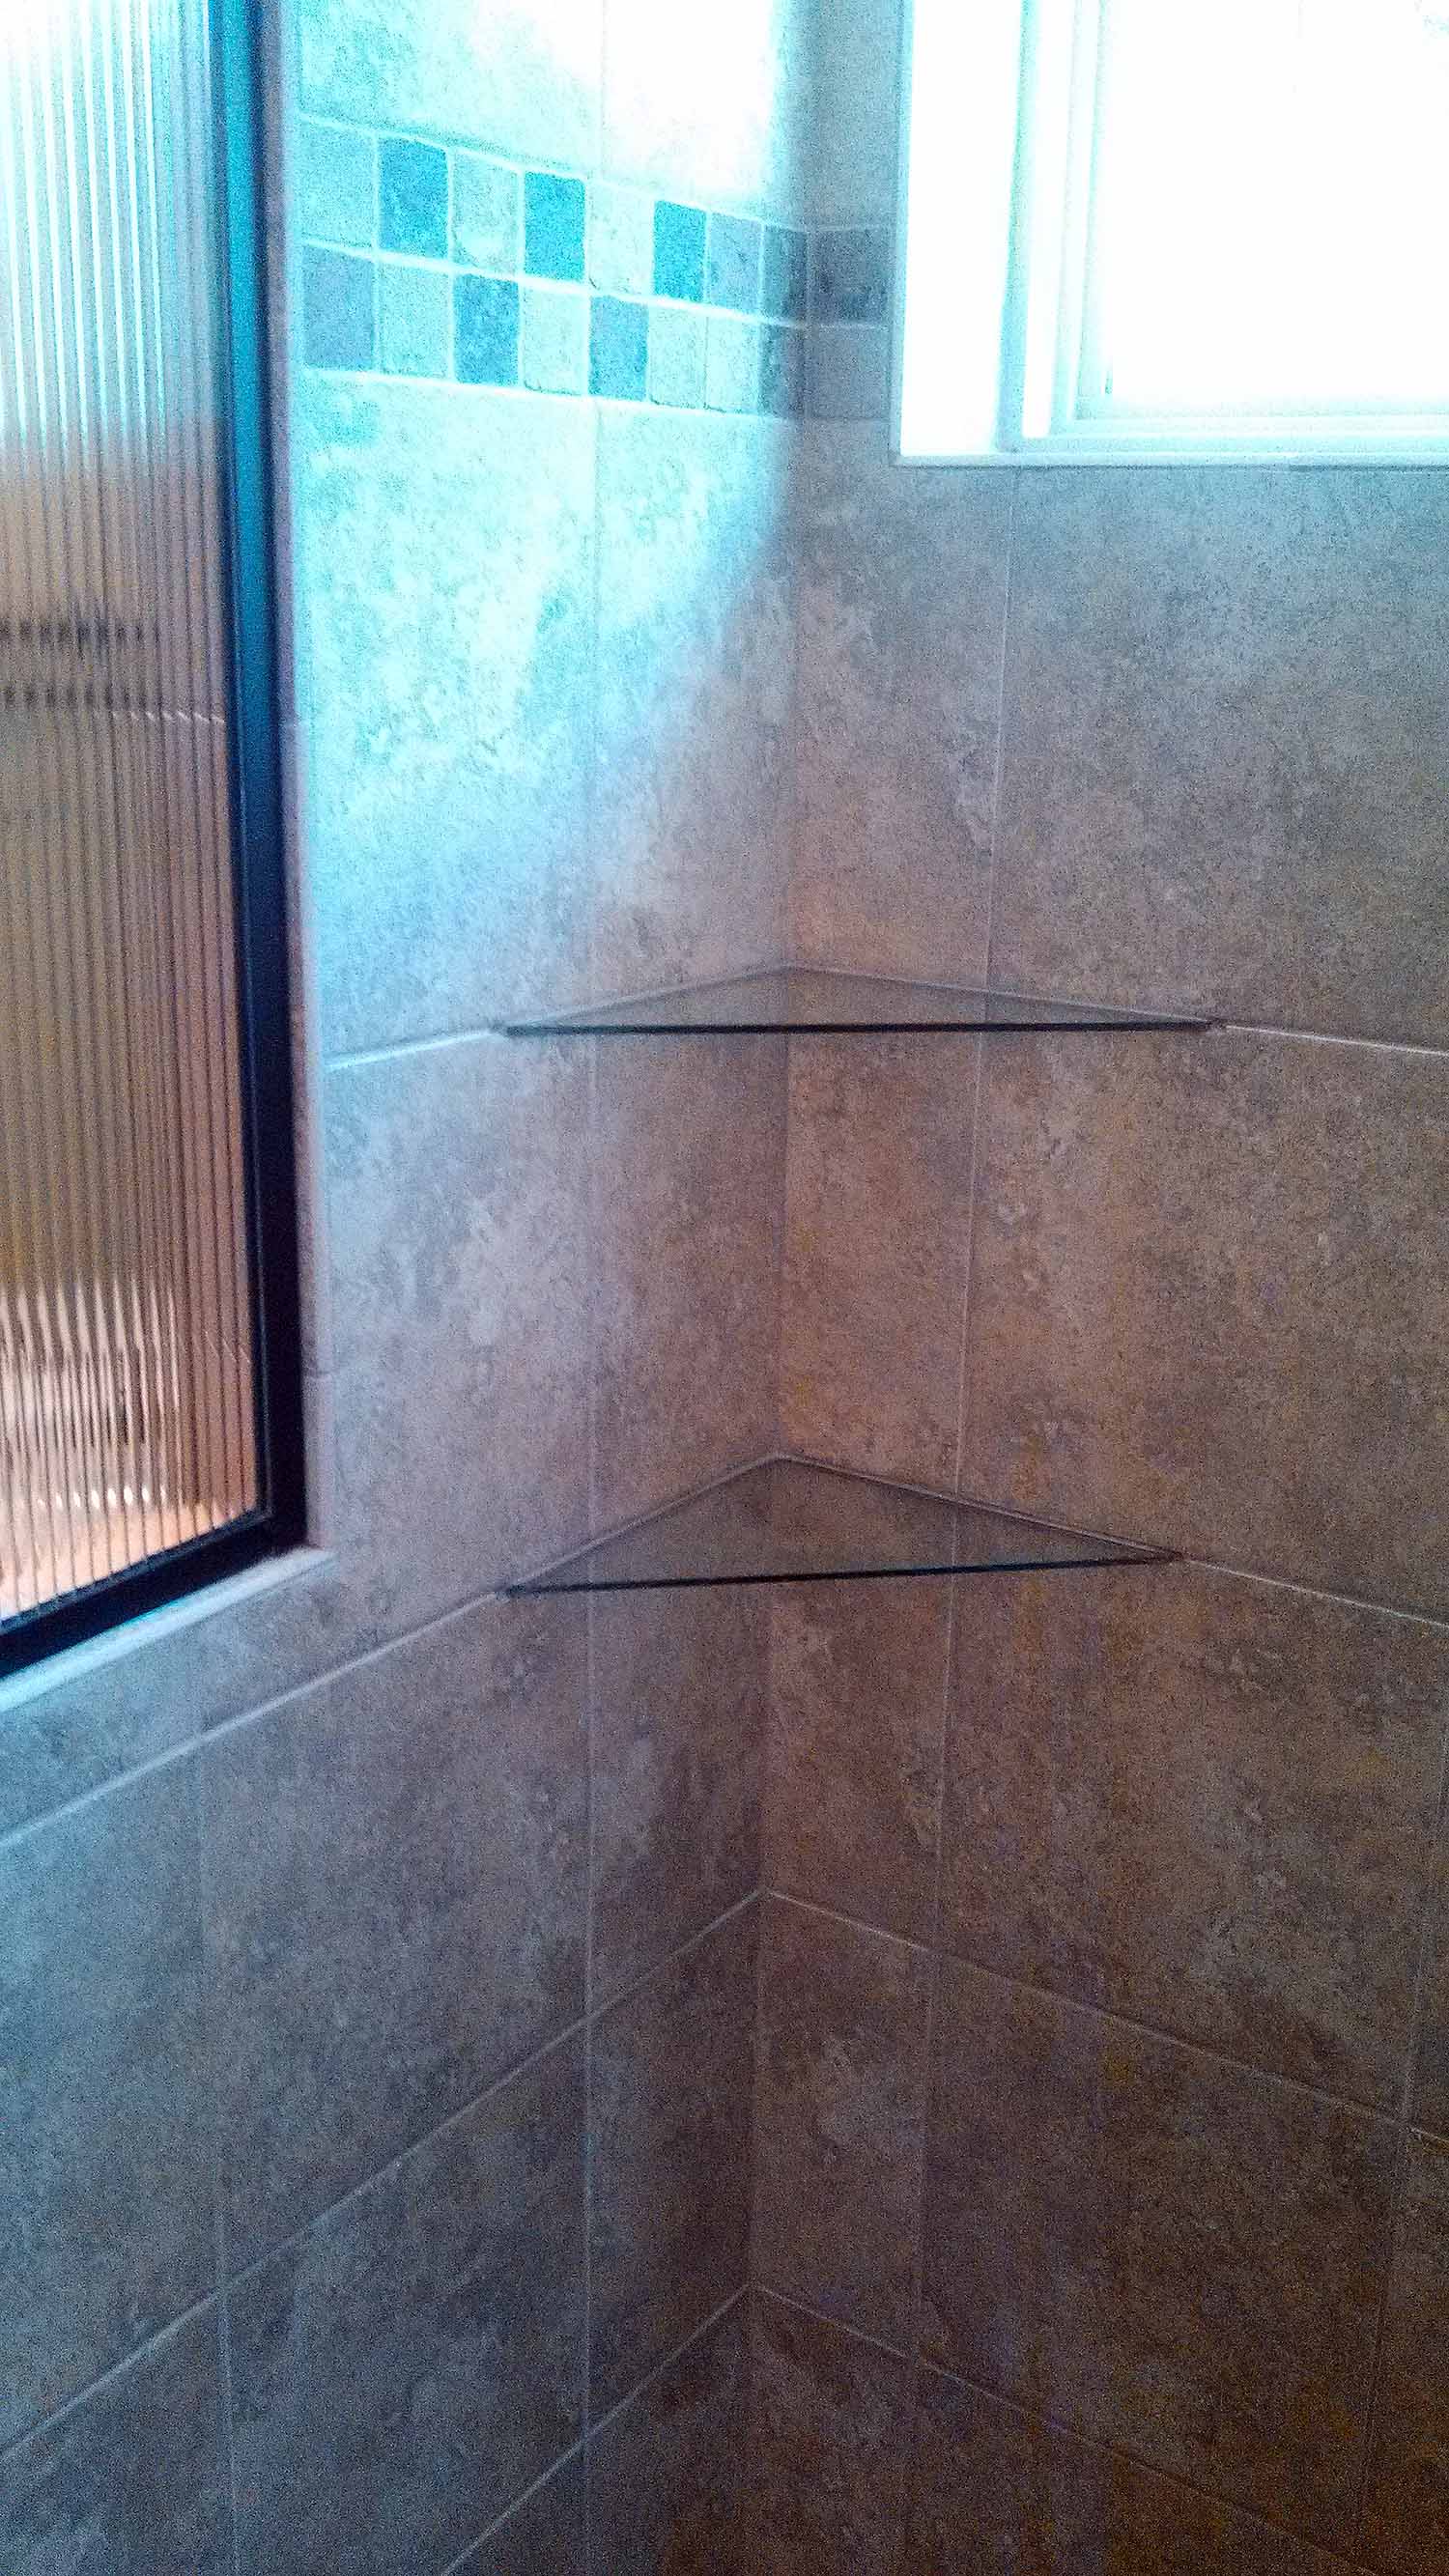 <p>Glass corner shelves in tile shower</p>